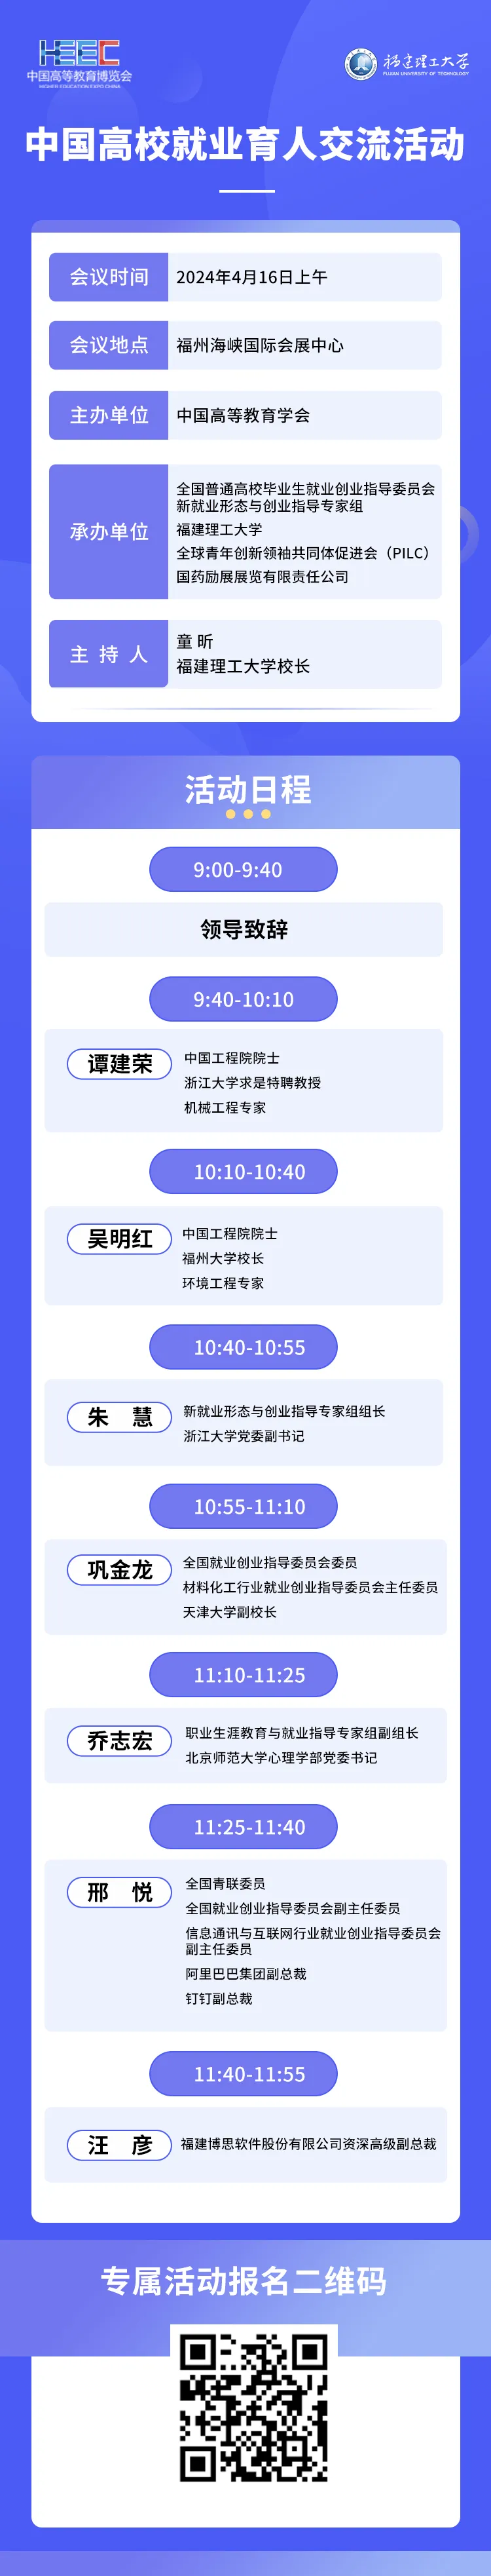 高博会活动日程⑥ | 中国高校就业育人交流活动